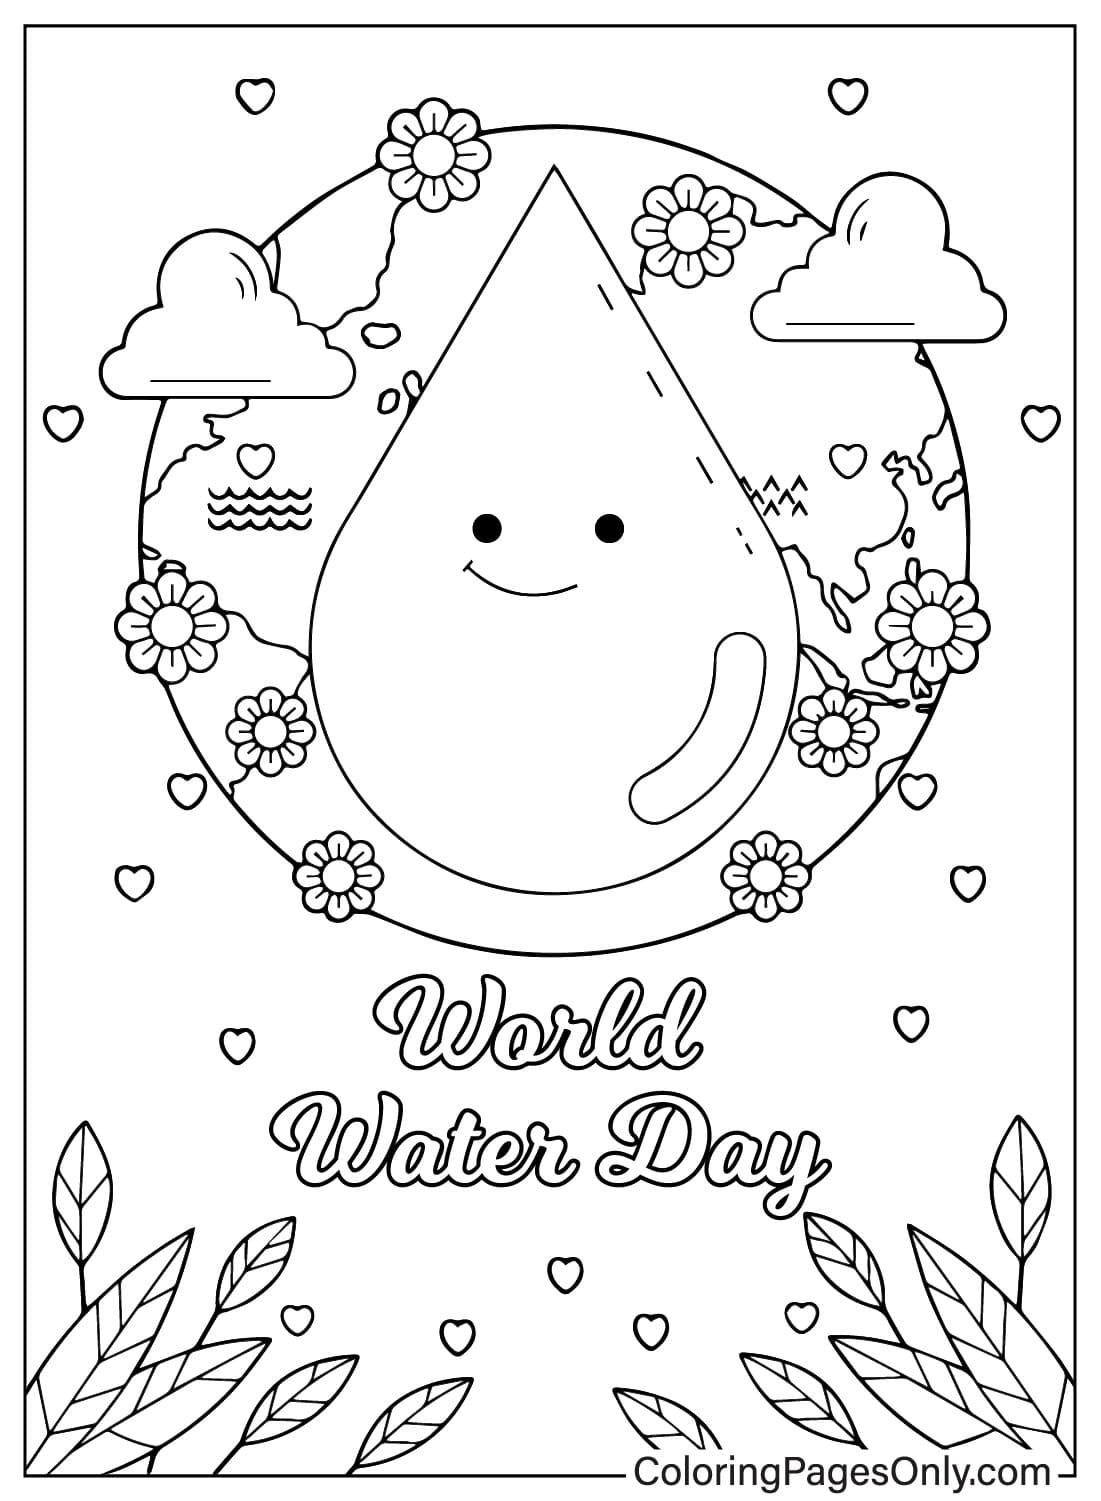 Malvorlagen zum Weltwassertag vom Weltwassertag